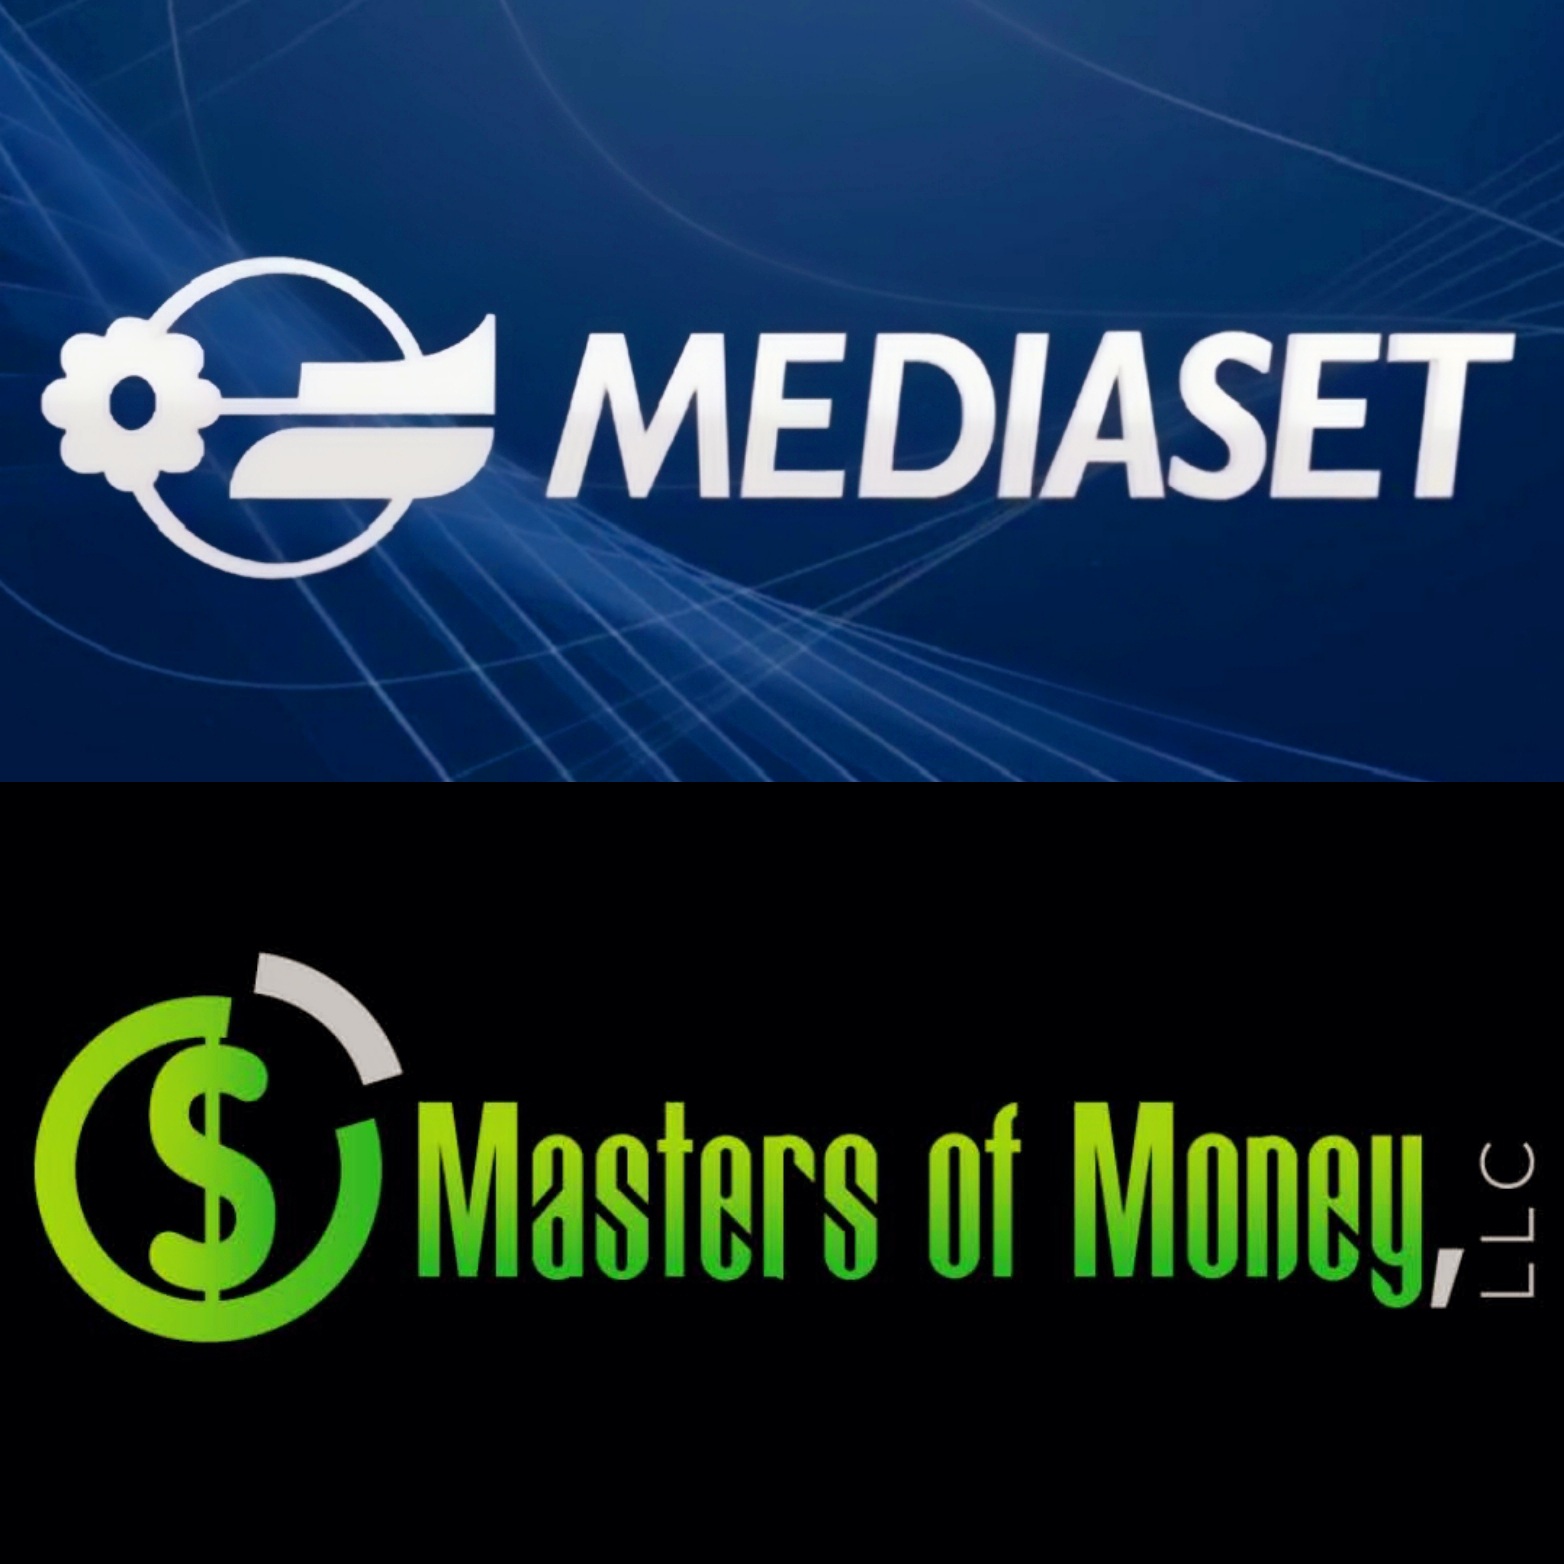 Mediaset and Masters of Money LLC Logo Photo Collage